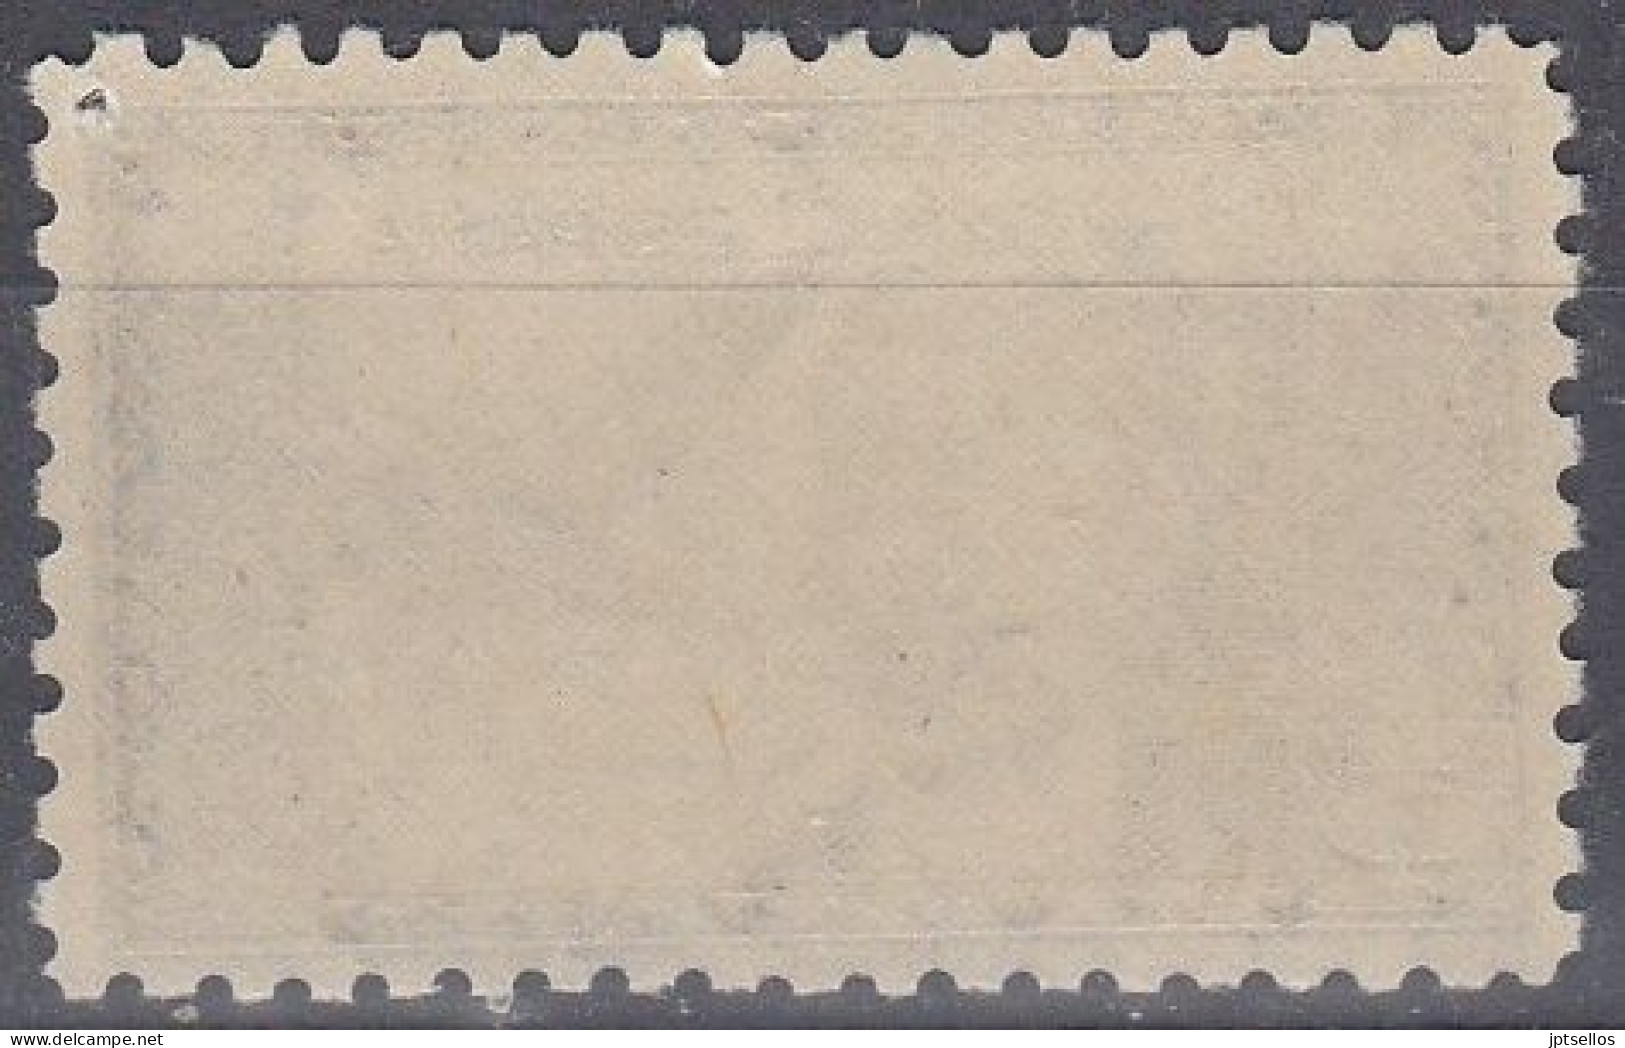 ESPAÑA 1944 Nº 983 NUEVO, SIN FIJASELLOS, (PUNTO DE AGUJA EN LAESQUINA SUP. DERCHA) - Unused Stamps